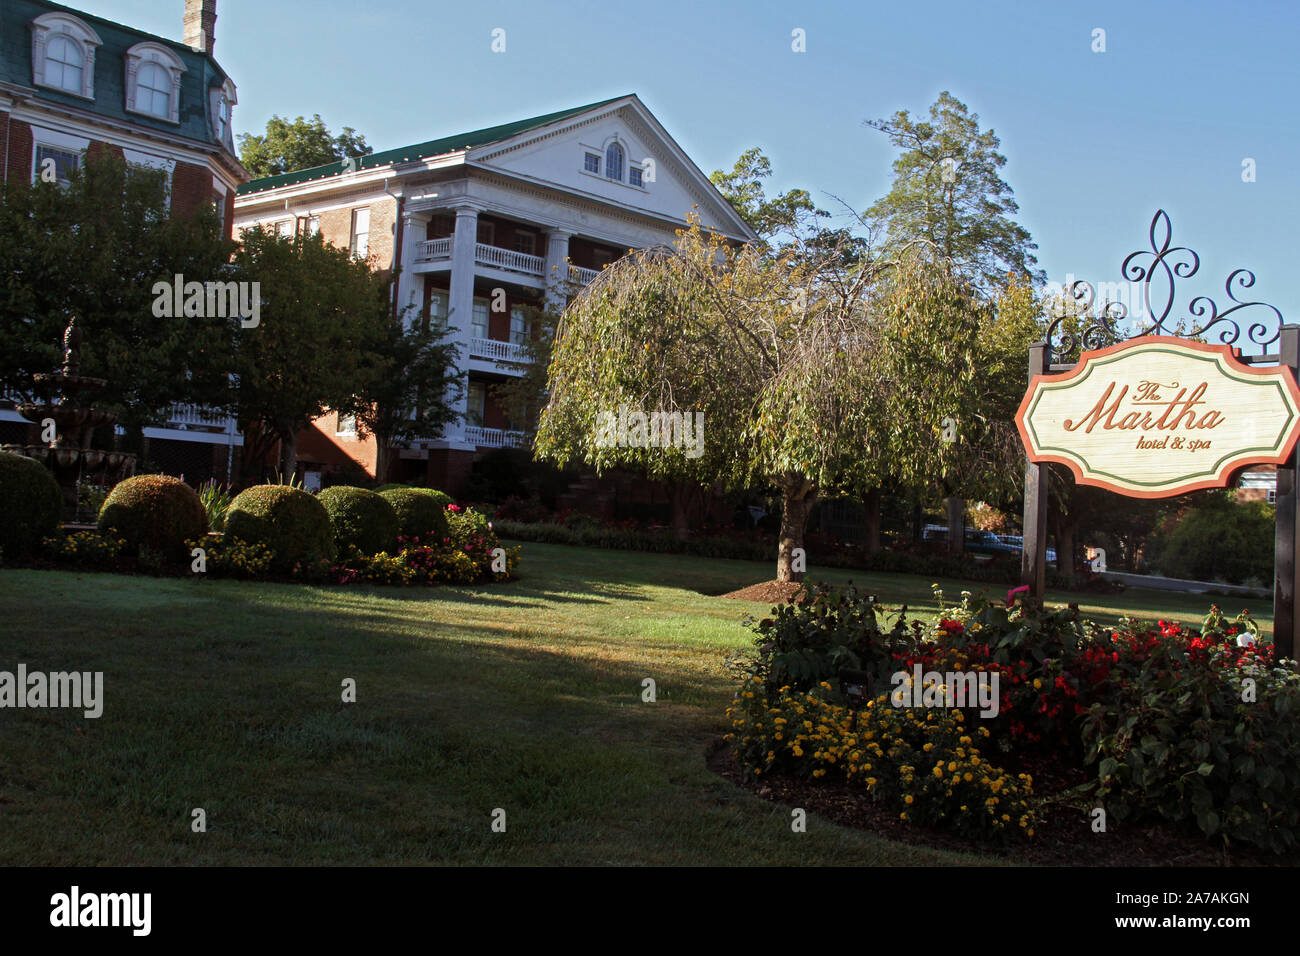 Le quartier historique de Martha Washington Inn dans le centre-ville d'Abingdon, VA, USA Banque D'Images